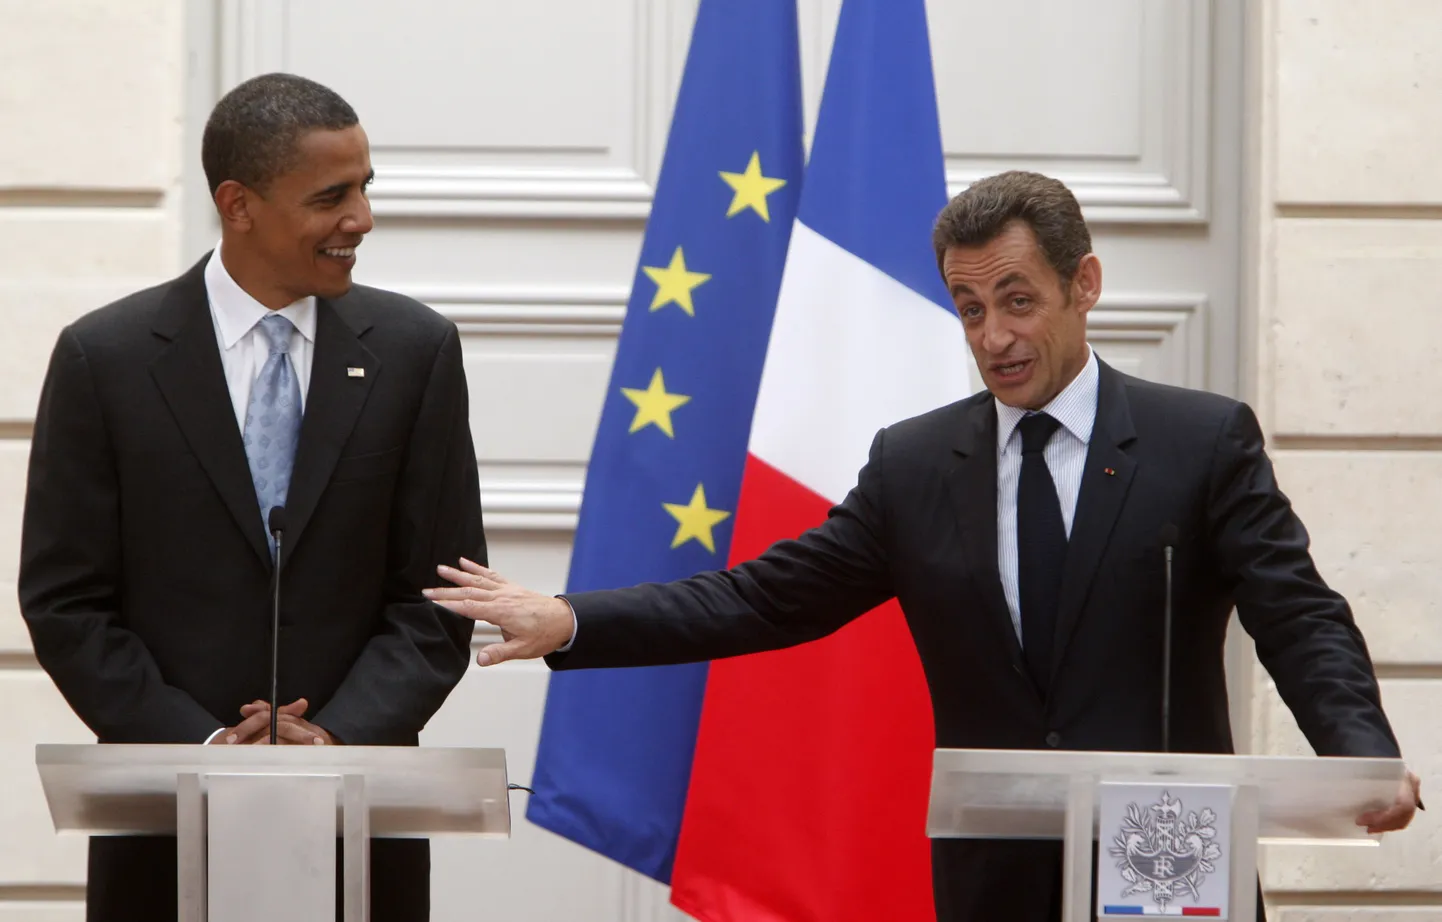 Ühendriikide president Barack Obama (vasakul) ja Prantsusmaa riigipea Nicolas Sarkozy.